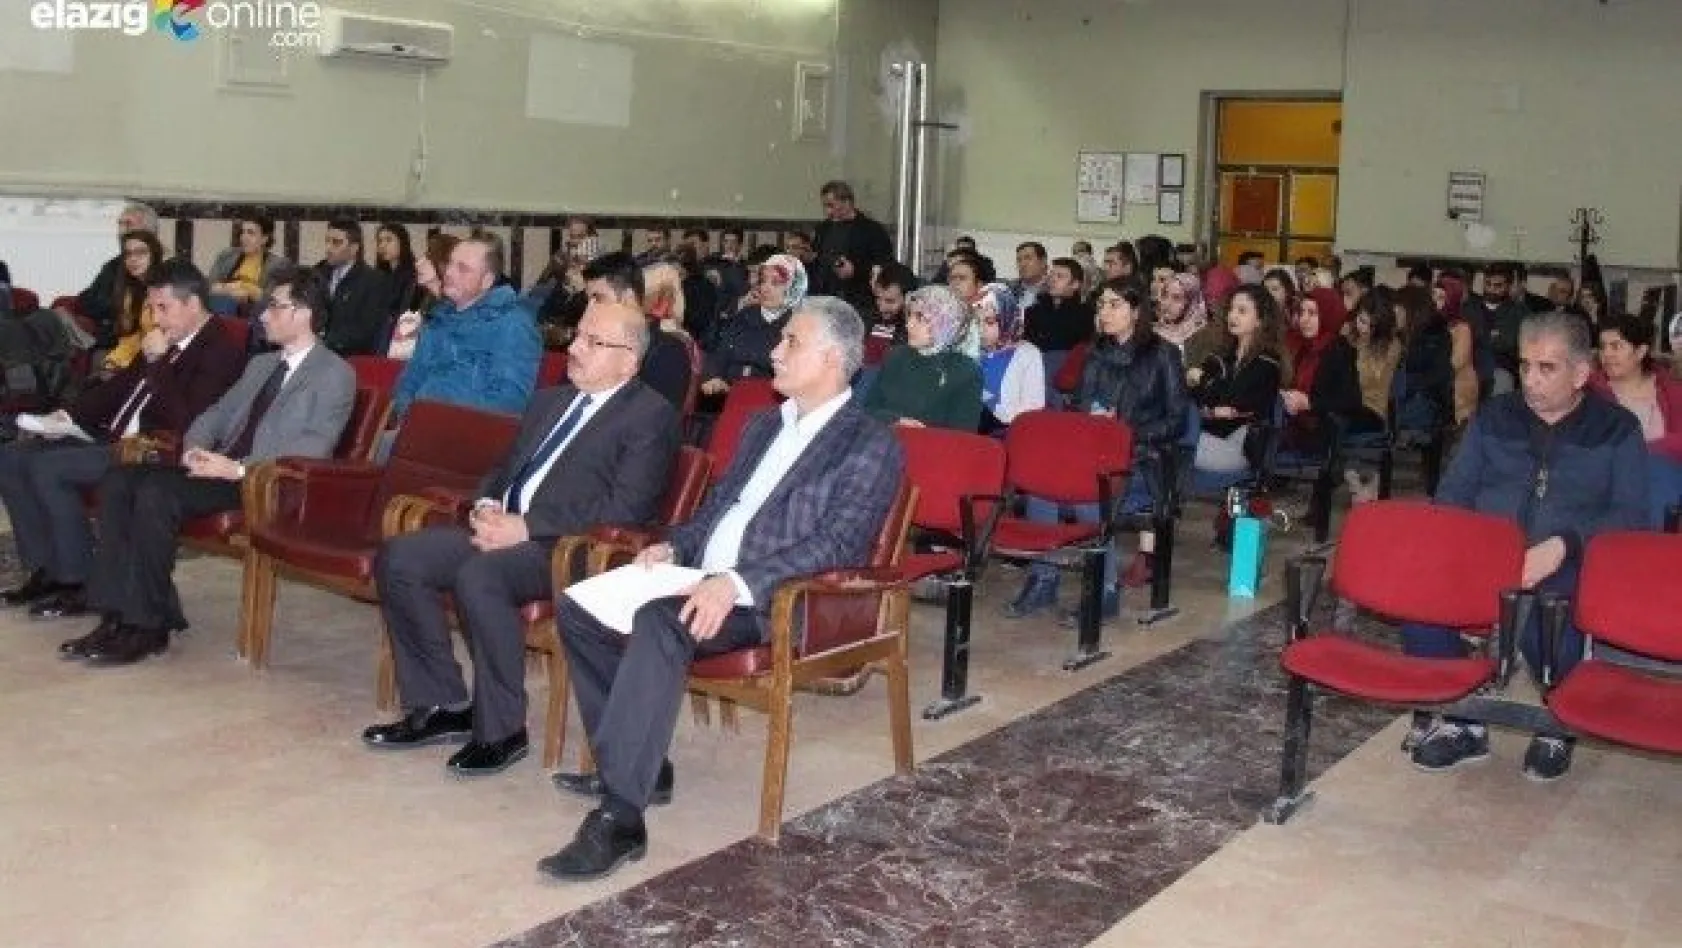 Elazığ'da 'Teknolojinin Hakimi Geleceğin Sahibi Ol' projesi